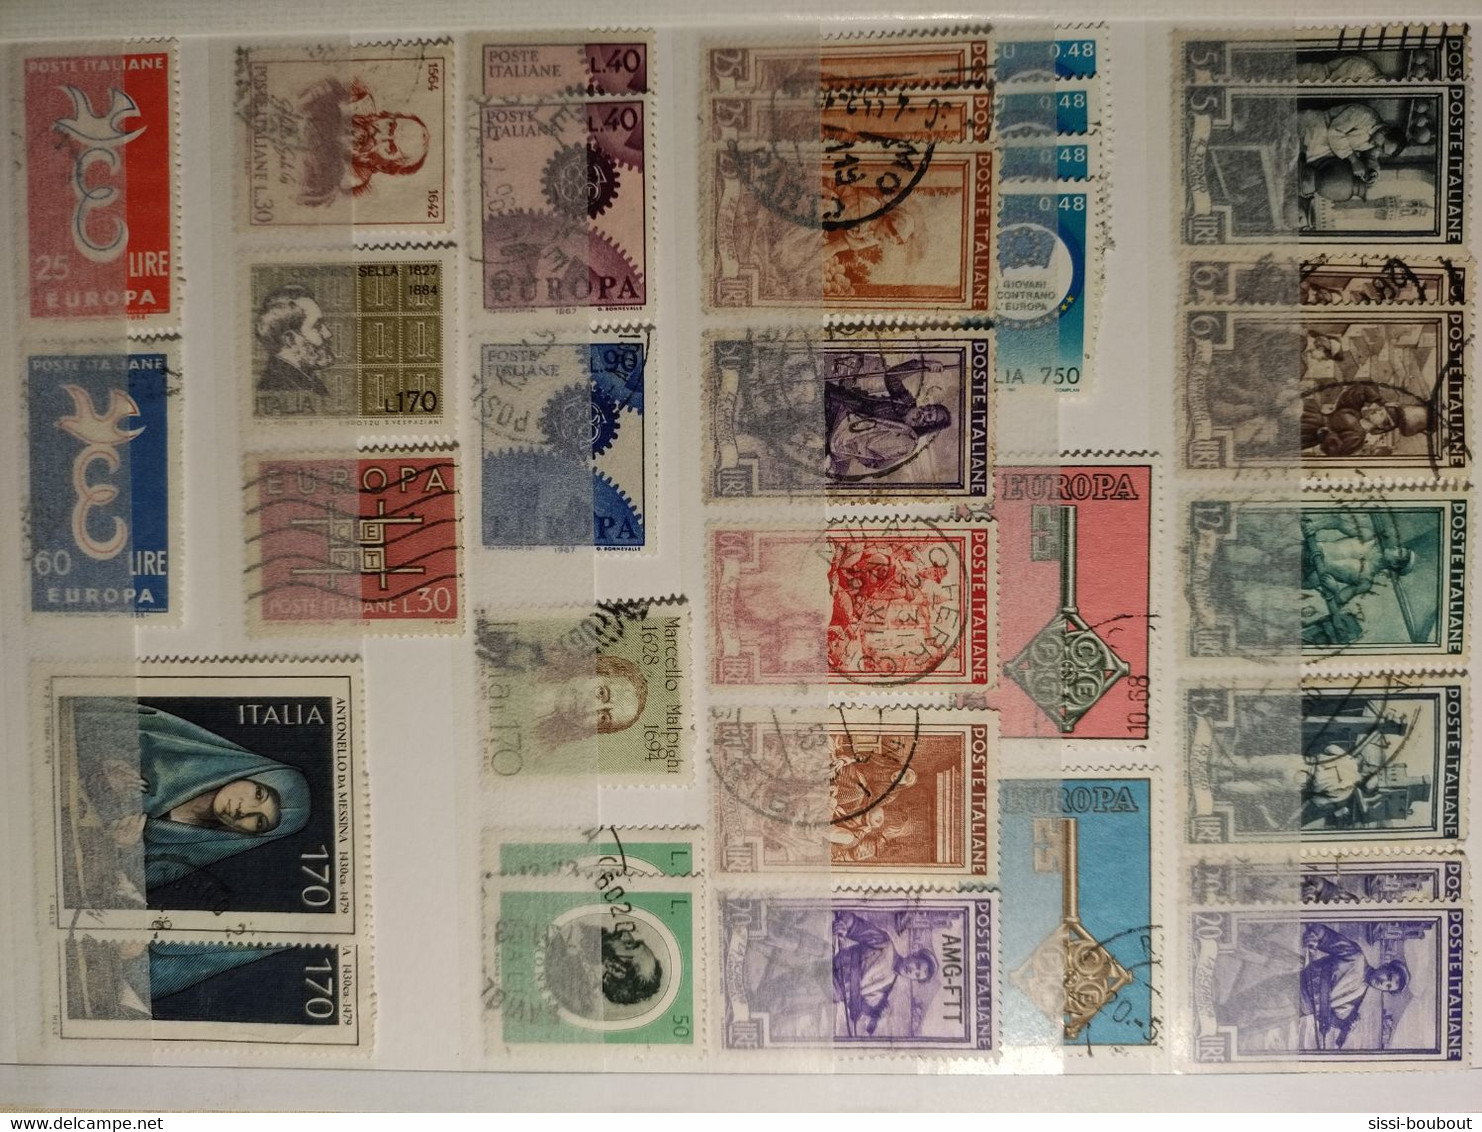 Timbres de ITALIE "OBLITERE" - 310 timbres - Plus Stock OFFERT - Tout état -Toutes années - Vente sans l'album